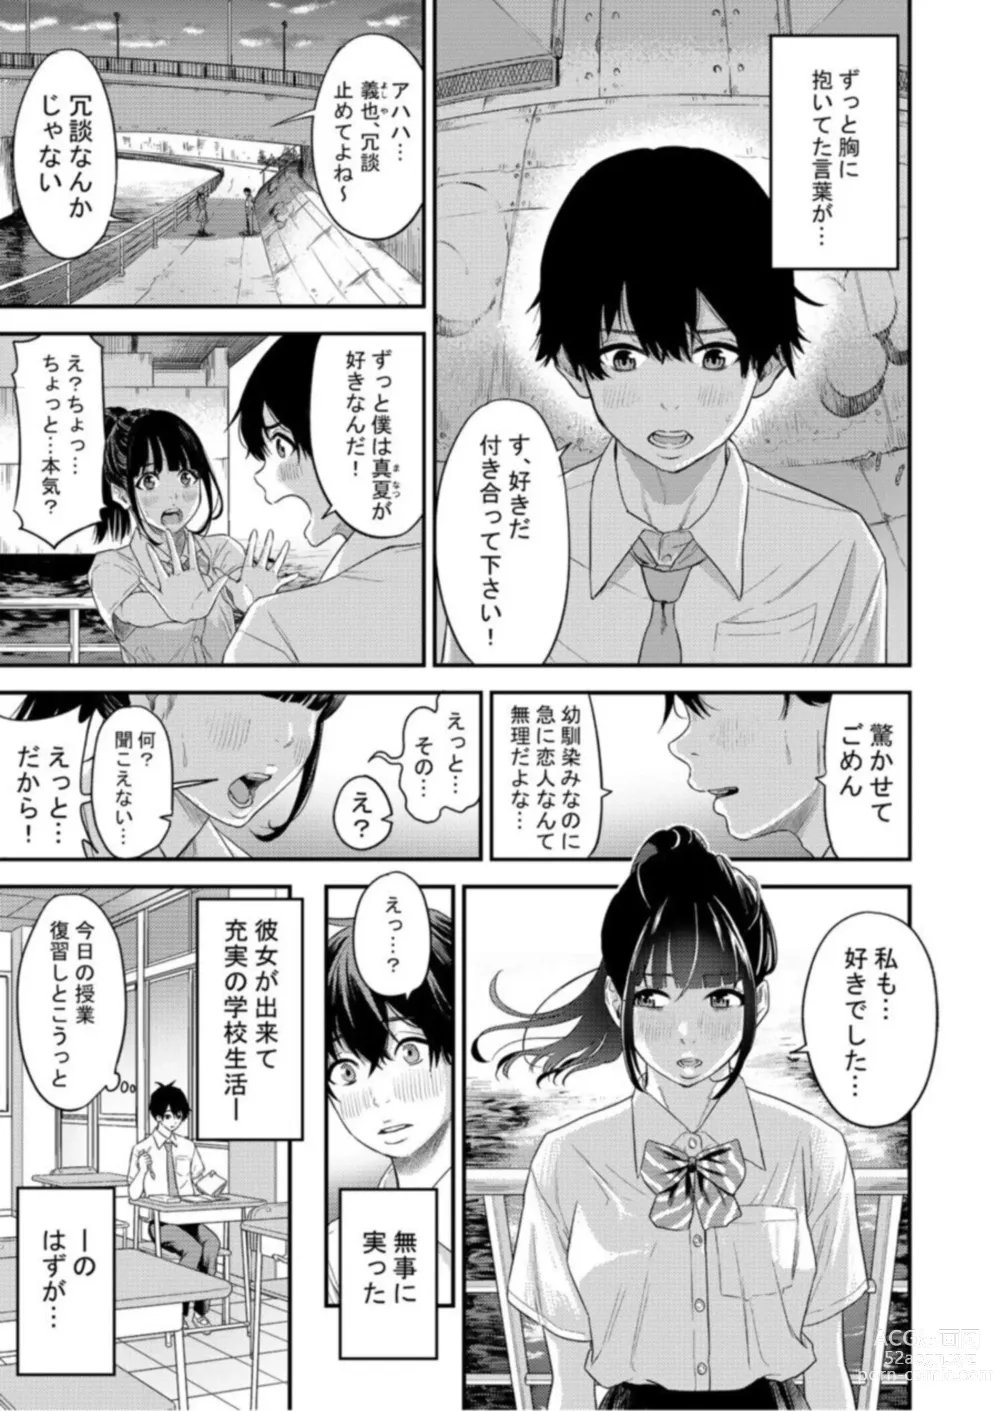 Page 3 of manga Chijo Rizumu 1